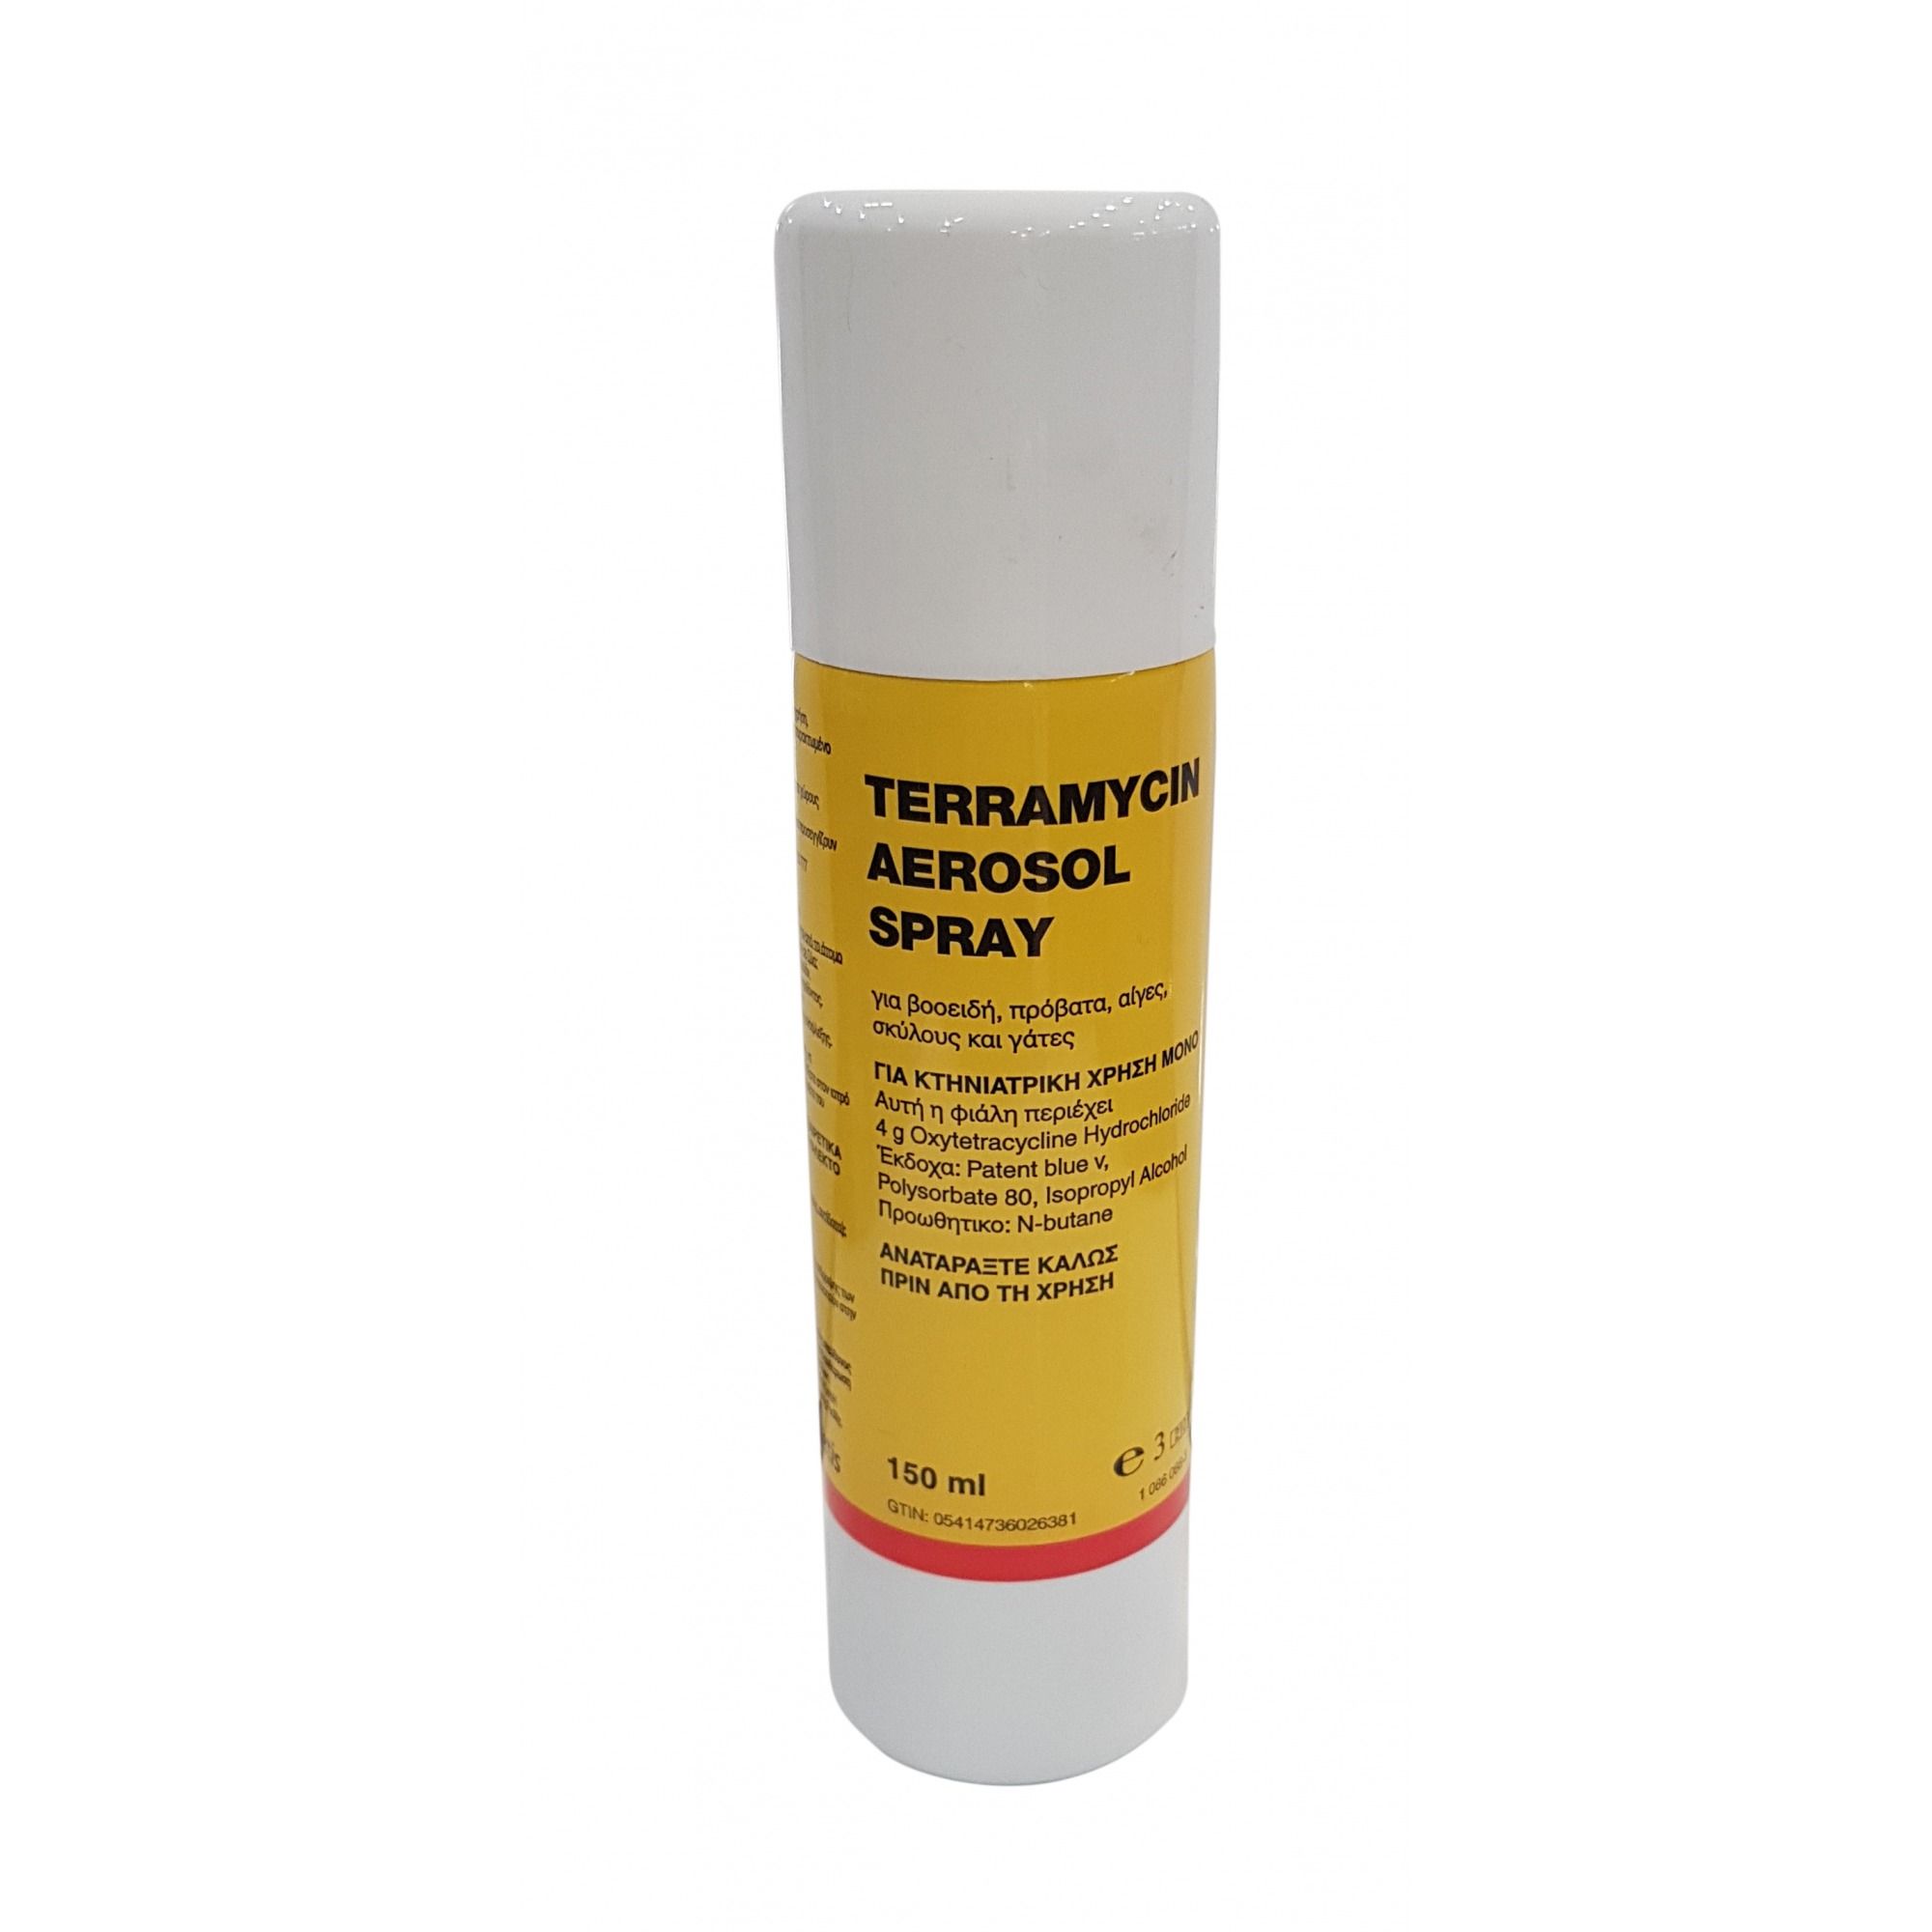 Terramycin Aerosol Spray 3.92% w/w cutaneous spray